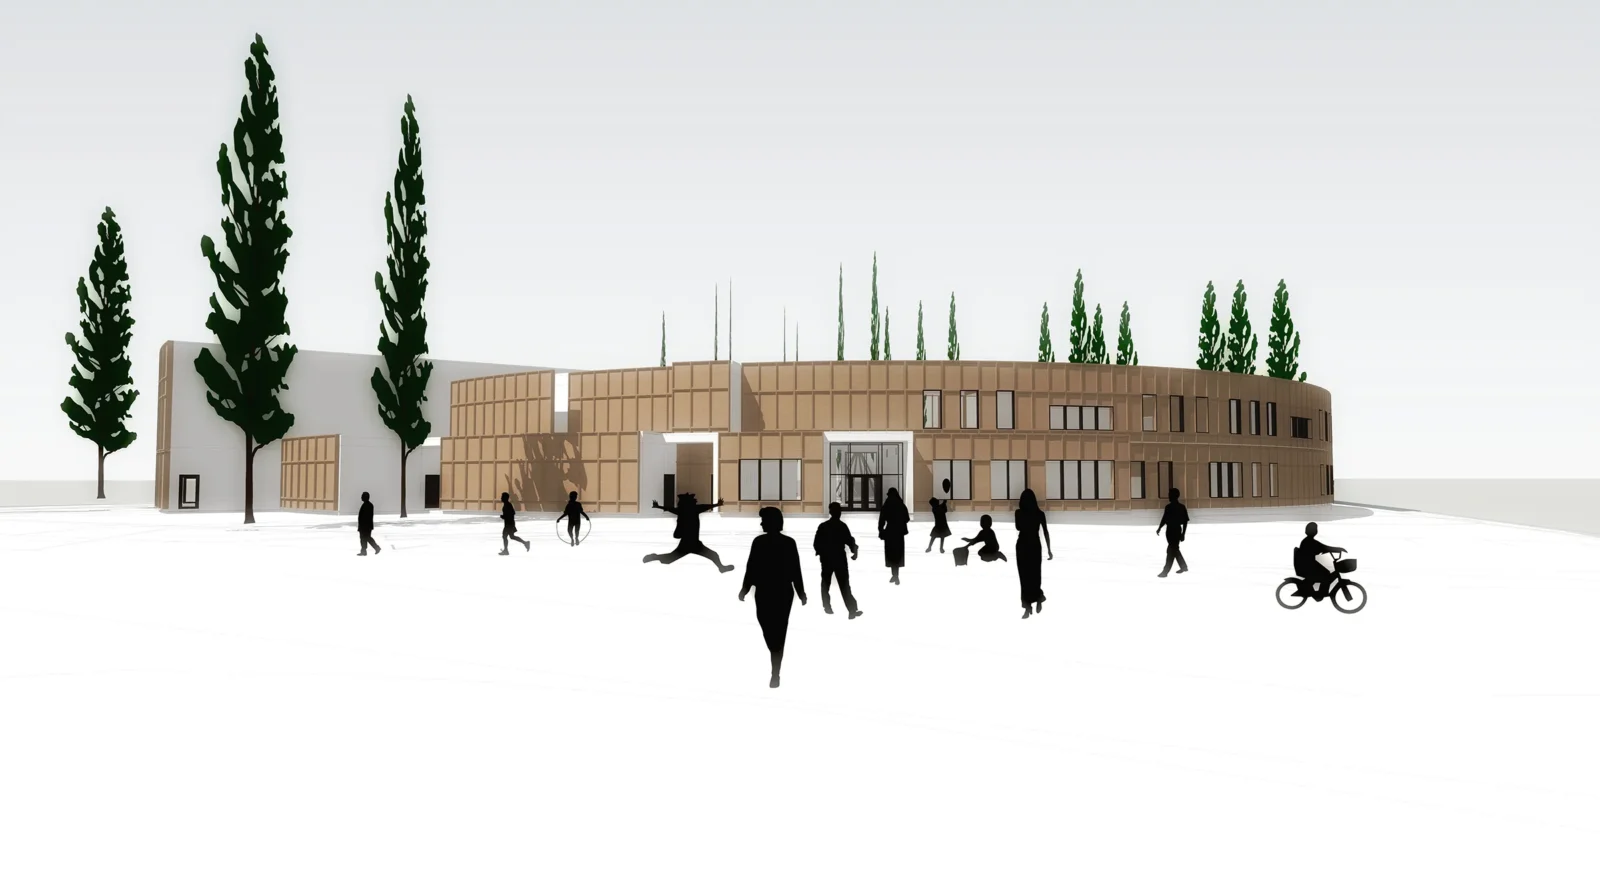 Rendu architectural d'une vue extérieure de l'école primaire Lac Barrière avec silhouettes